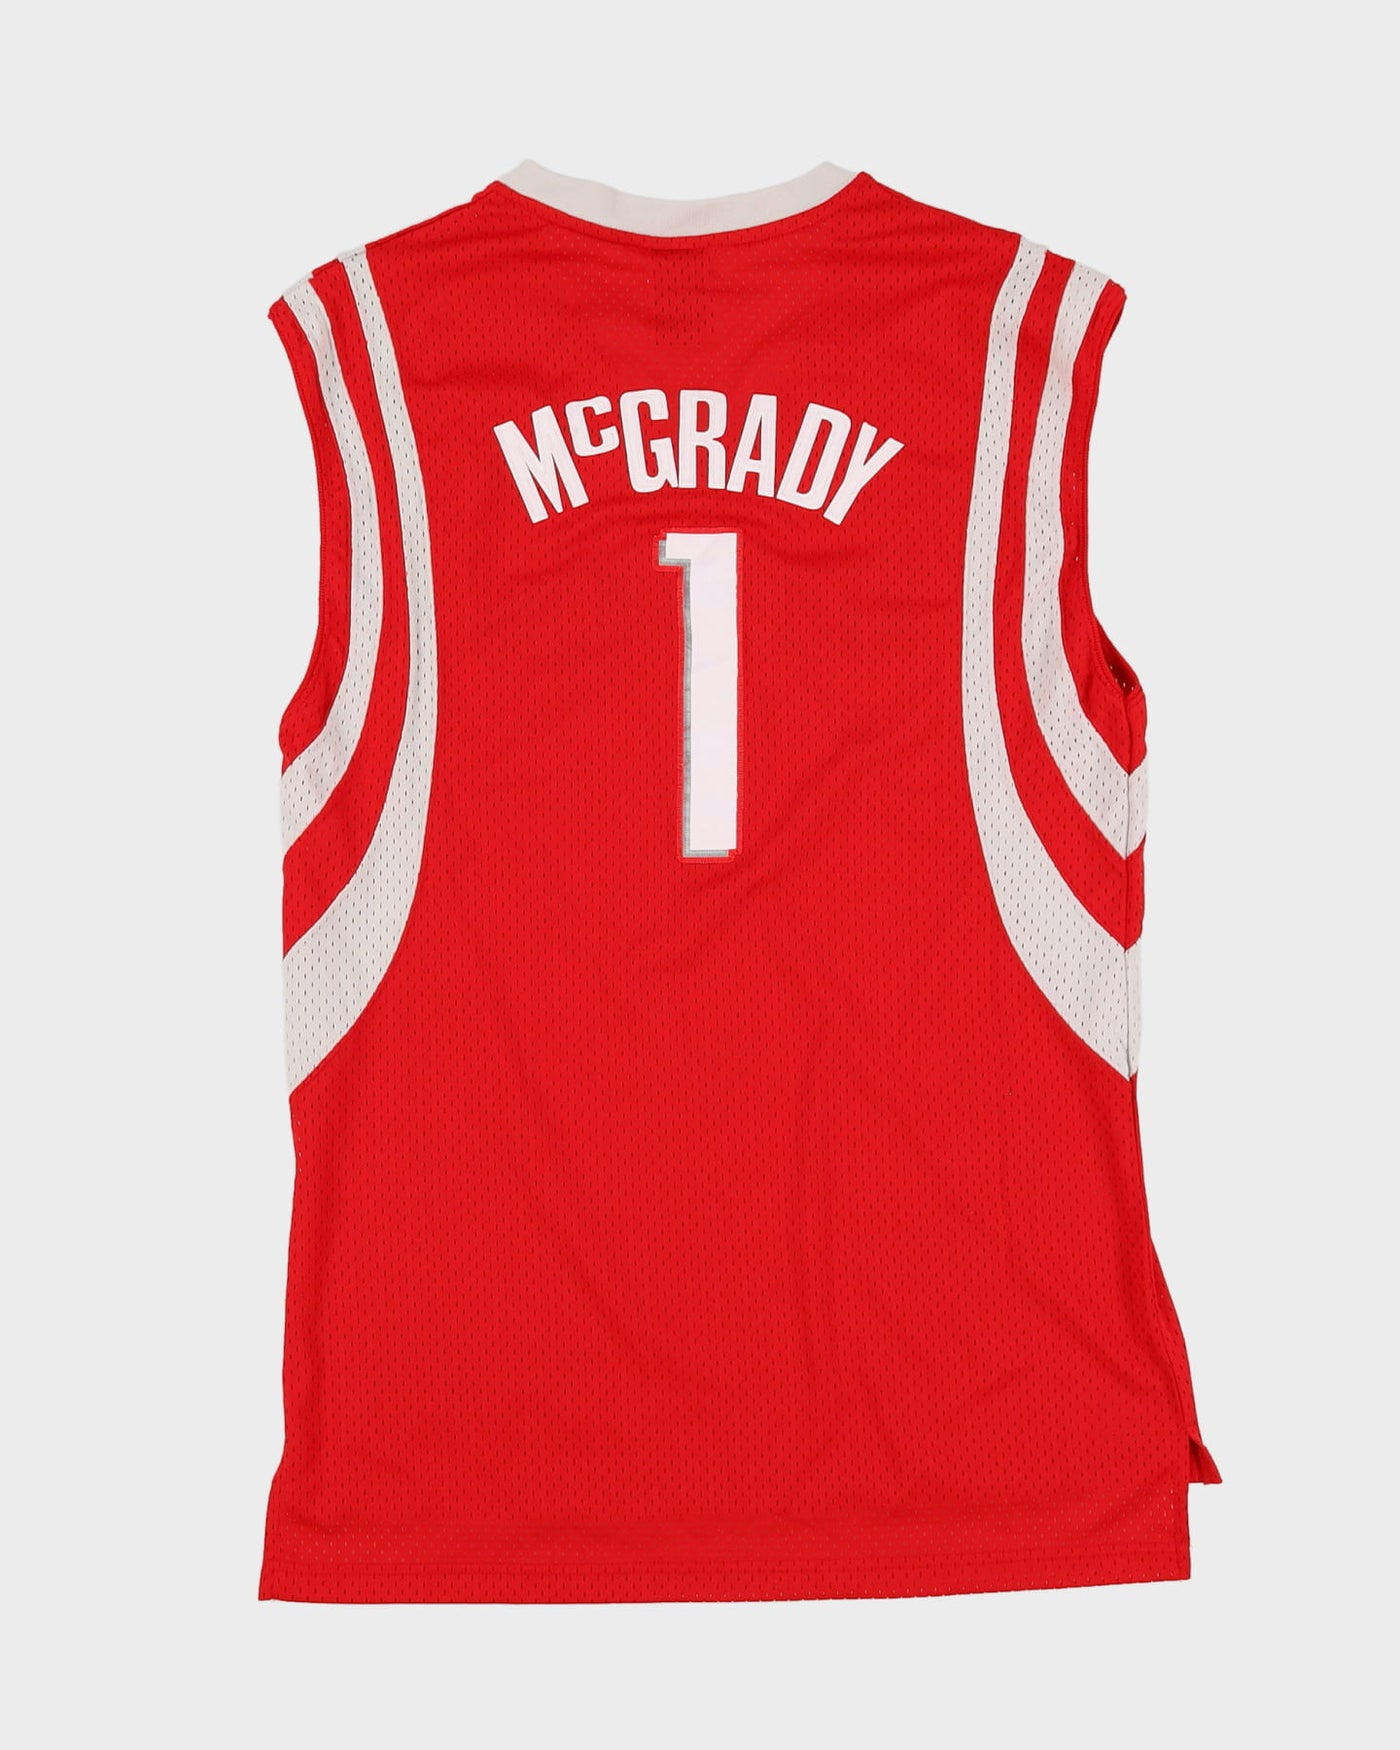 00s Reebok Tracy McGrady #1 Houston Rockets Red NBA Stitched Basketball Jersey - M